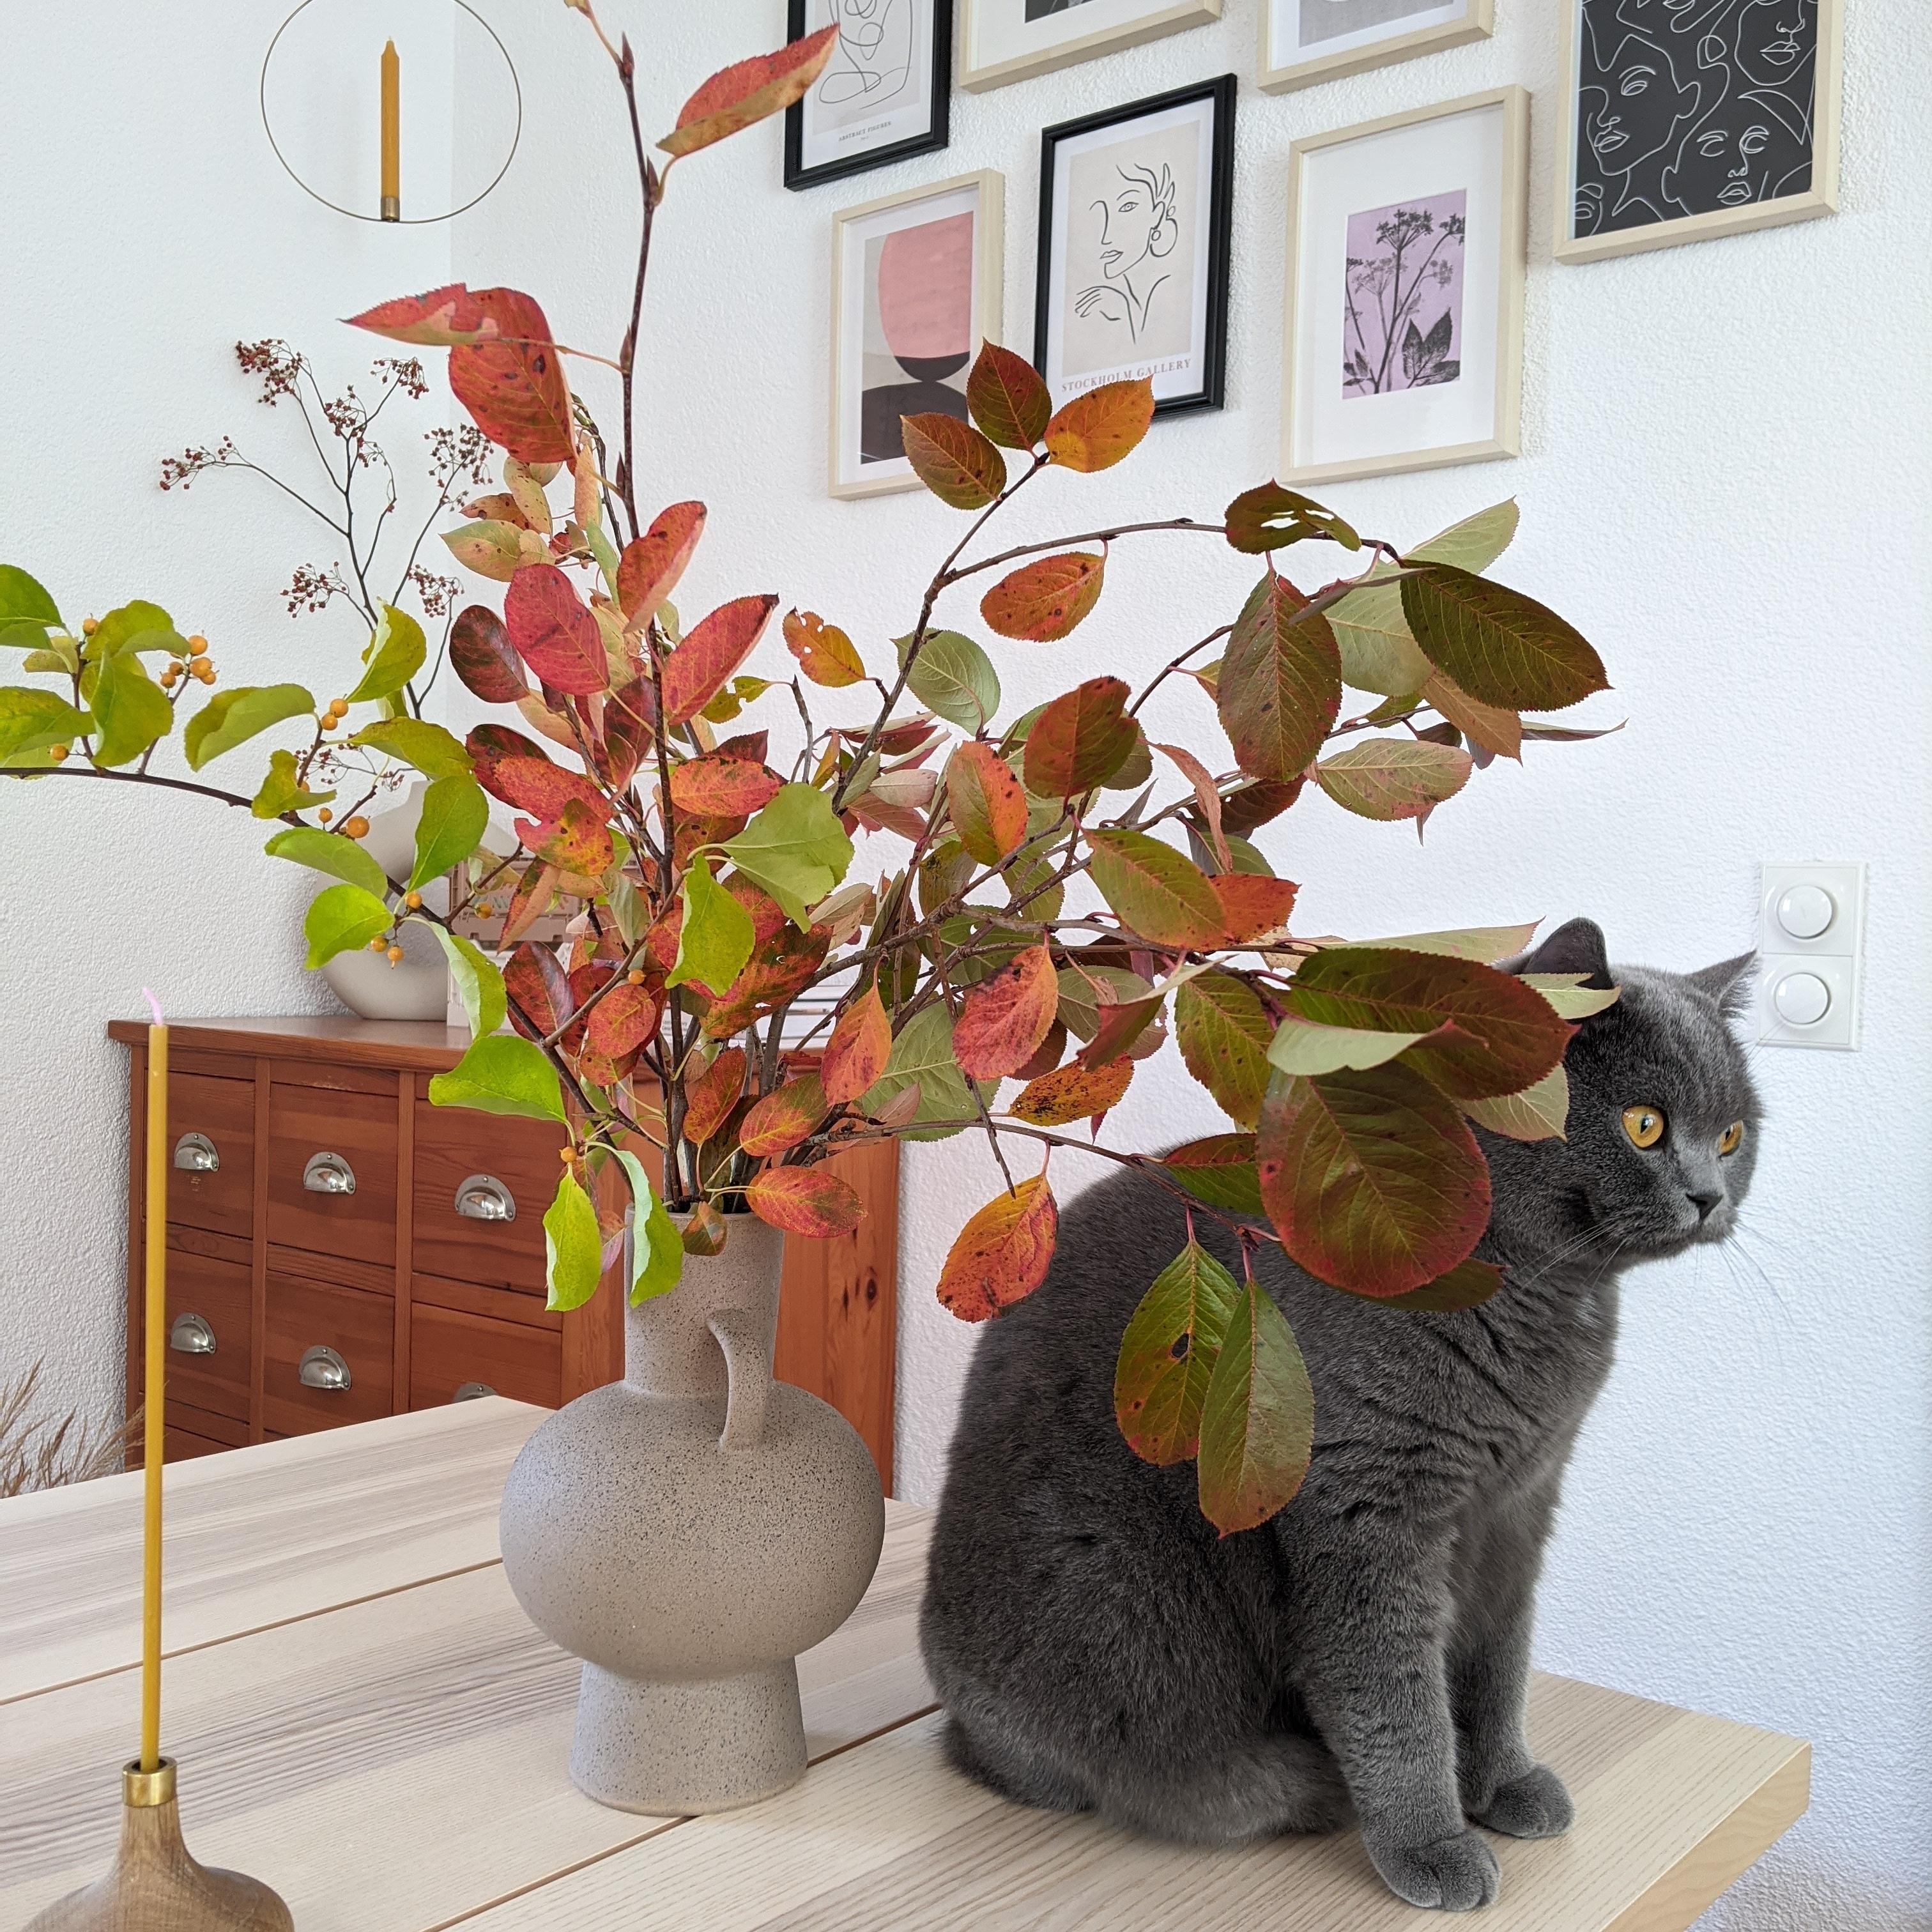 Natürlich darf die Katze auf den Tisch😉😁🍂🍁 ...
#herbst #herbstdeko #herbstfarben #esszimmer #vase #vasendeko #katze 